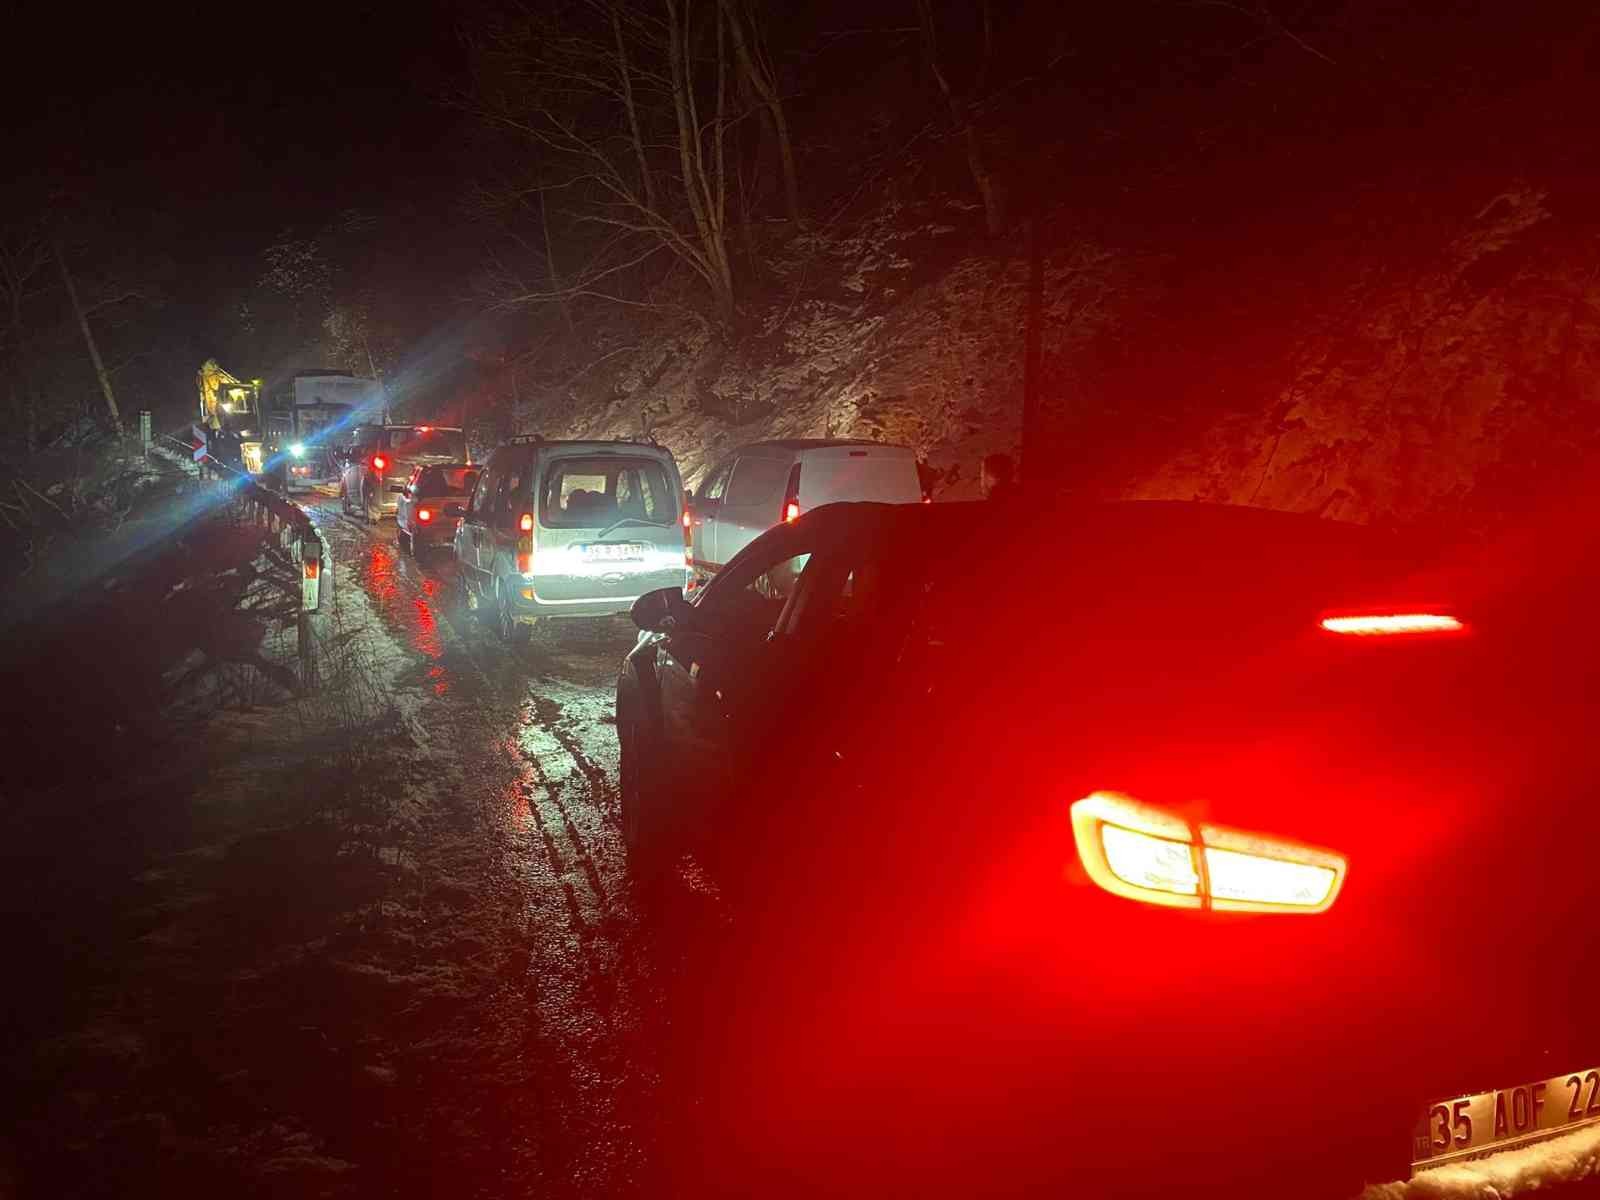 İzmir’de yoğun kar yağışı nedeniyle dağ yolunda mahsur kalan 20 kişi kurtarıldı #izmir